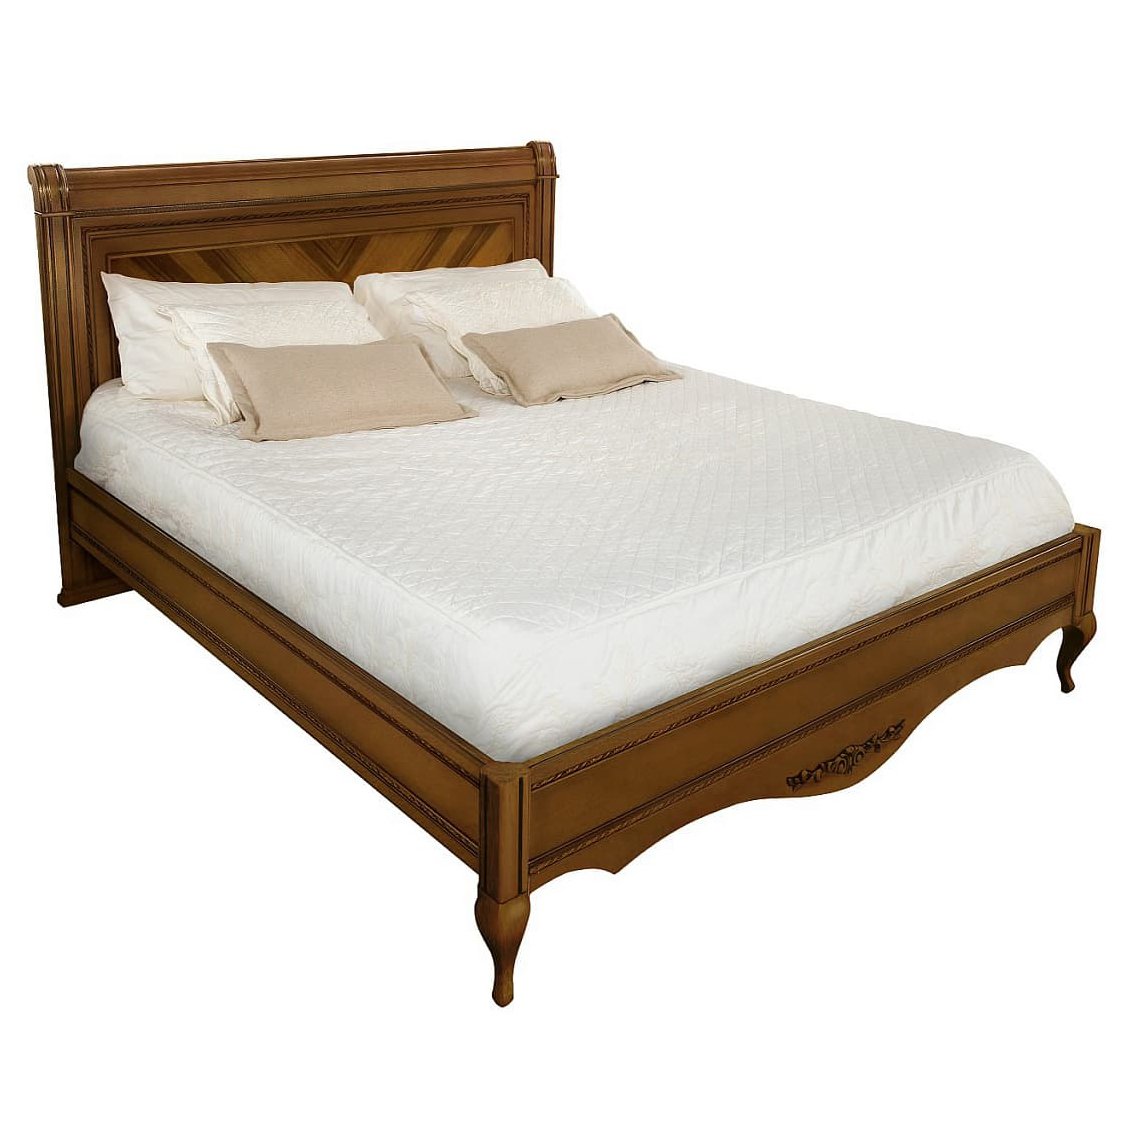 Кровать Timber Неаполь, двуспальная 180x200 см цвет: орех (T-538)T-538